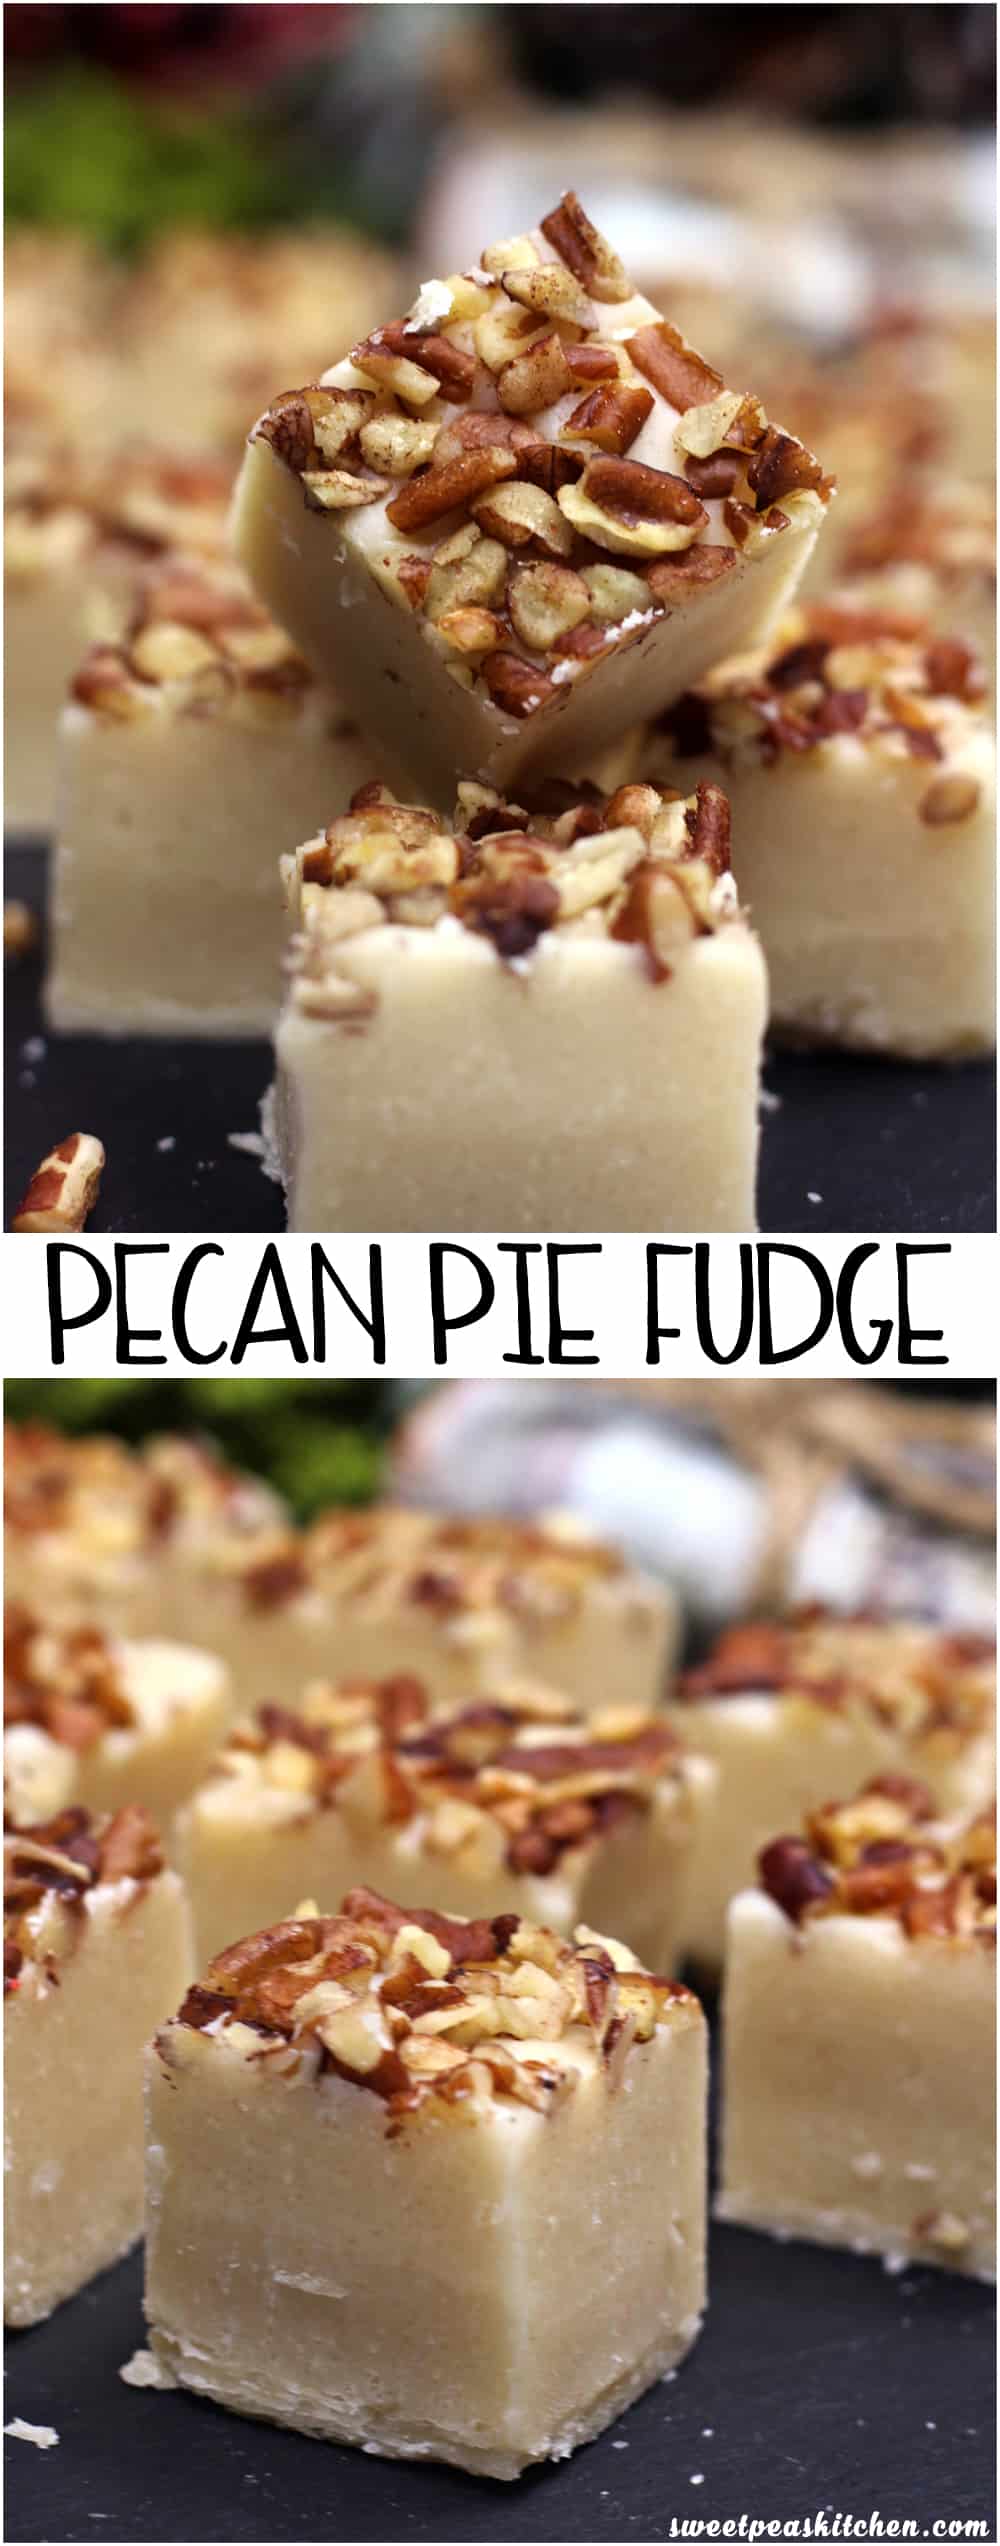 Pecan Pie fudge